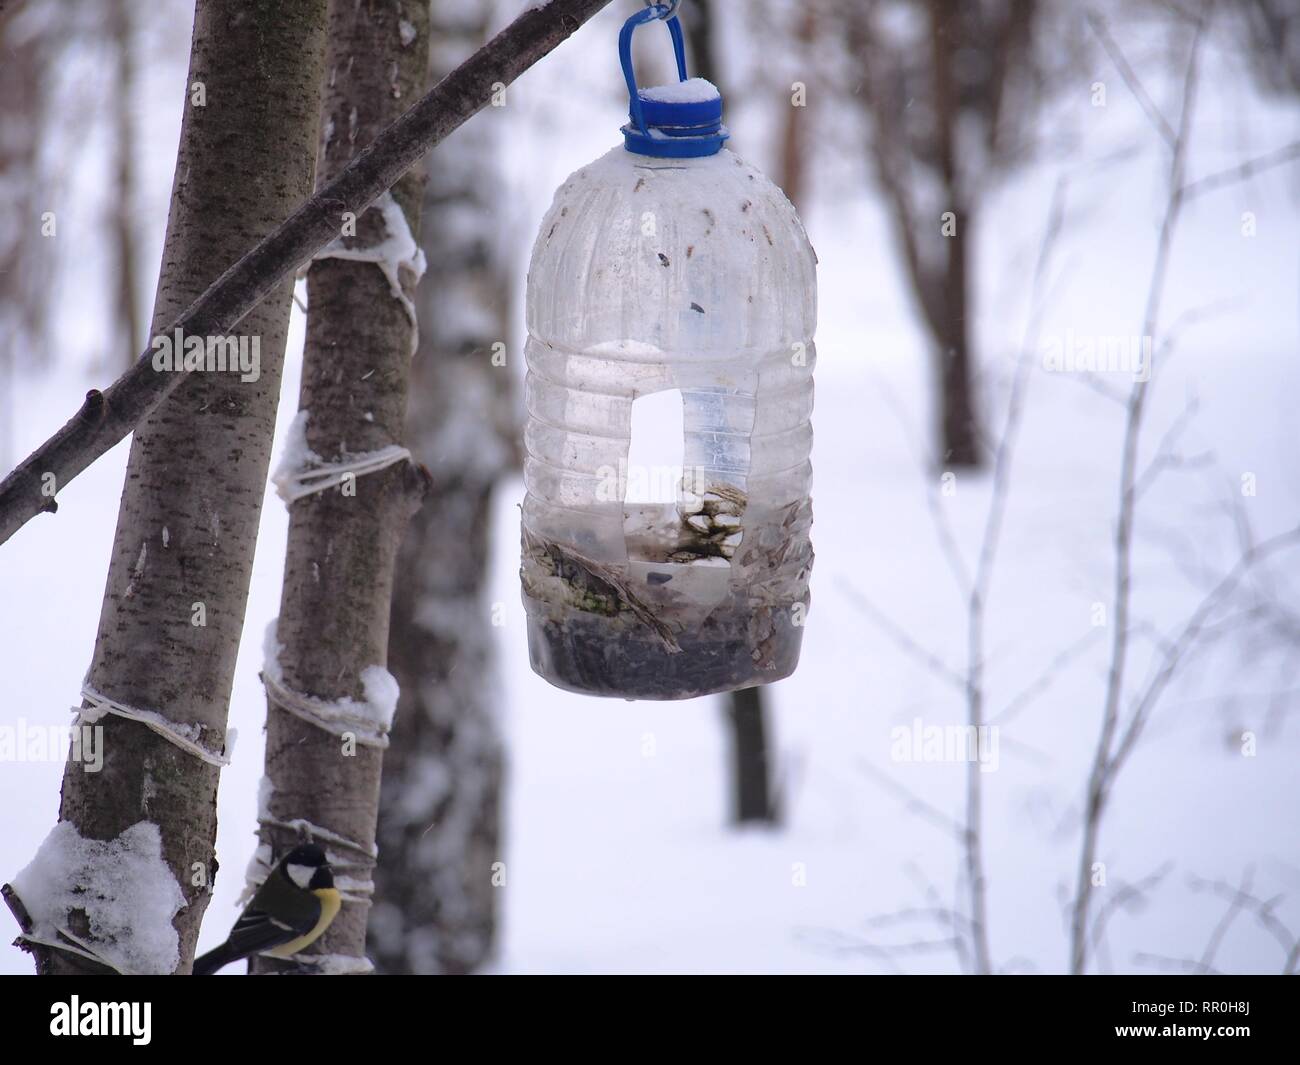 La mésange se nourrit dans une mangeoire faite d'une bouteille en plastique transparent. L'hiver. Photo d'oiseaux. Banque D'Images